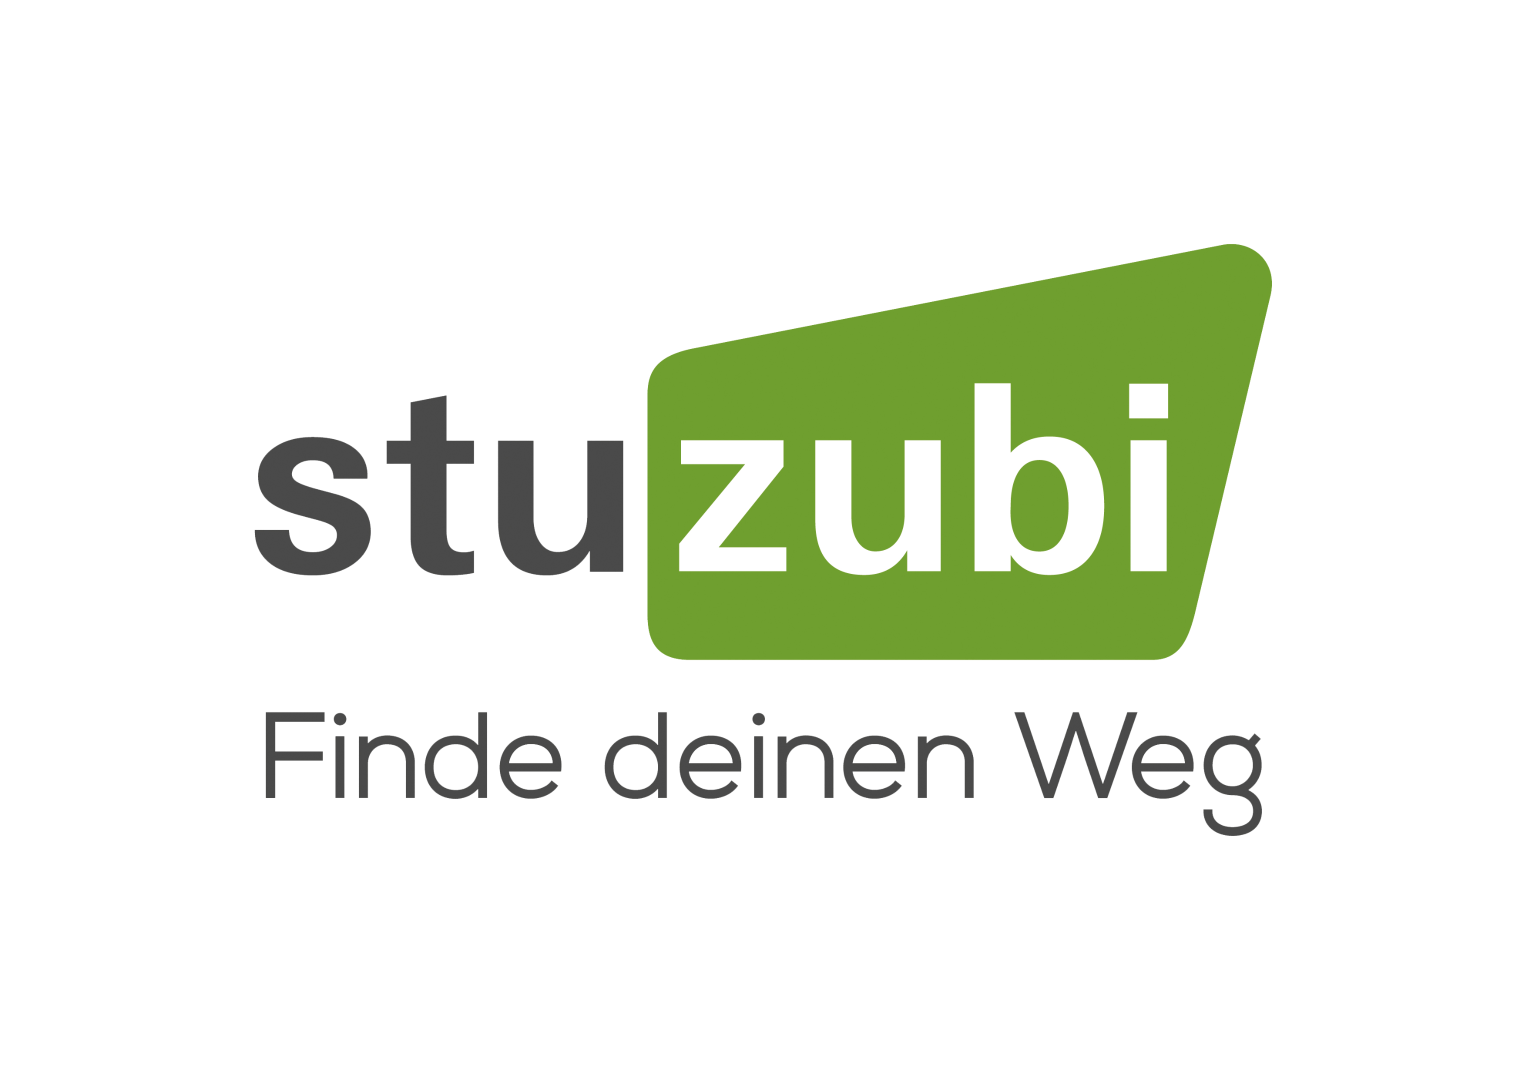 Die Karrieremesse „Stuzubi“ ist eine der größten Job- und Karrieremessen in Deutschland, in der sich junge Menschen kostenfrei und umfassend zu den Themen Ausbildung, Studium, Auslandspraktika und Bewerbungen informieren können.